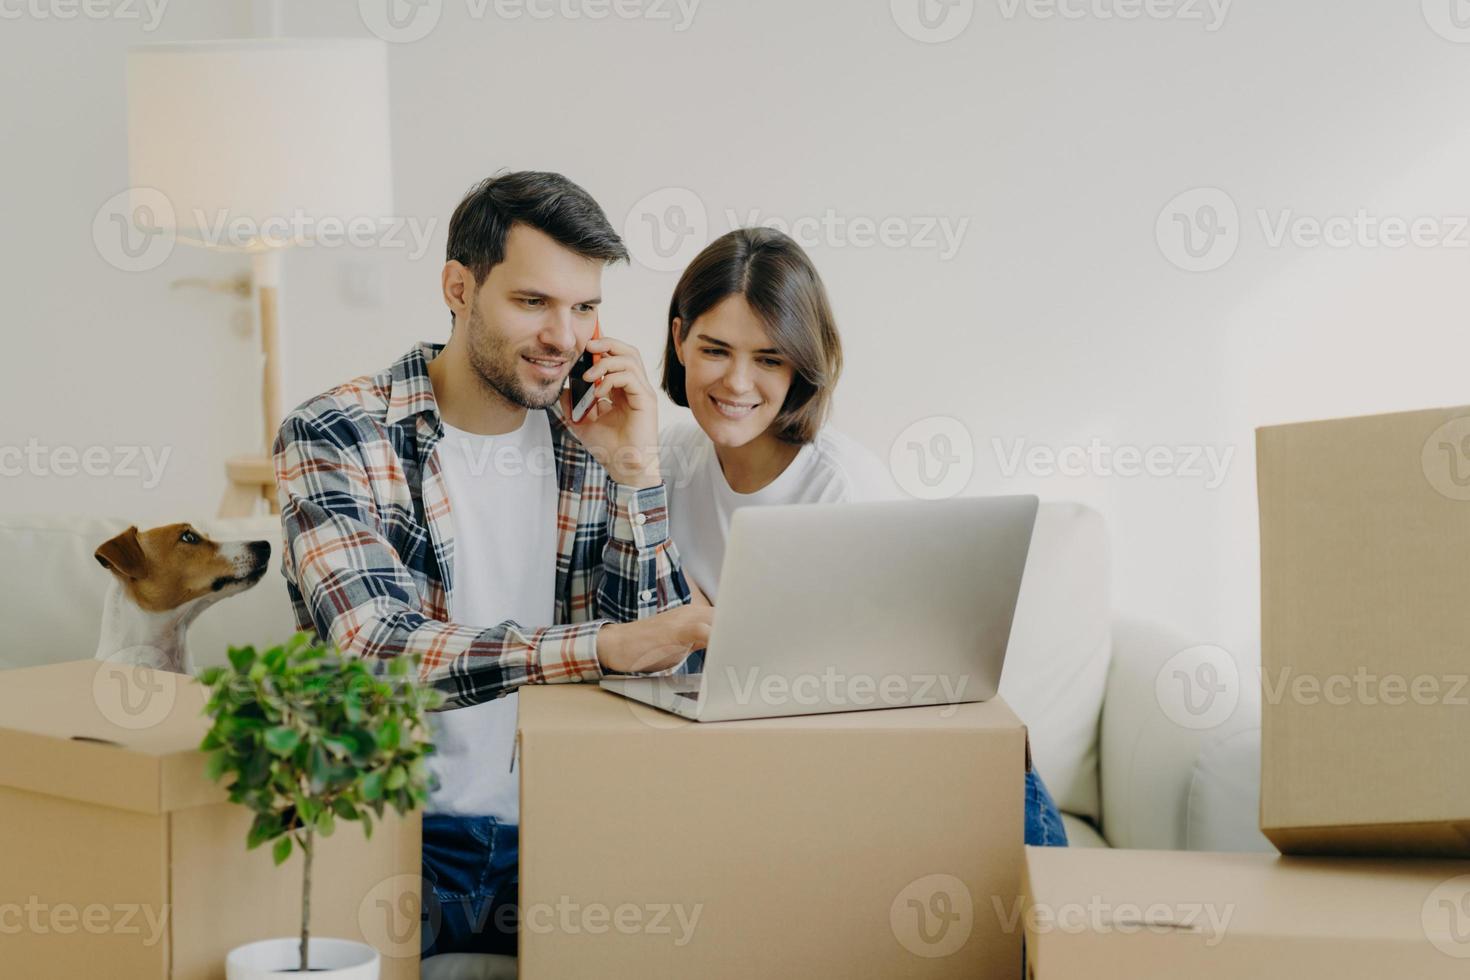 el hombre feliz navega por la computadora portátil en un piso nuevo, llama a través de un teléfono inteligente, se muda a un apartamento nuevo junto con su esposa, se sienta en un cómodo sofá, rodeado de cajas de cartón en la sala de estar, un perro pequeño cerca. foto